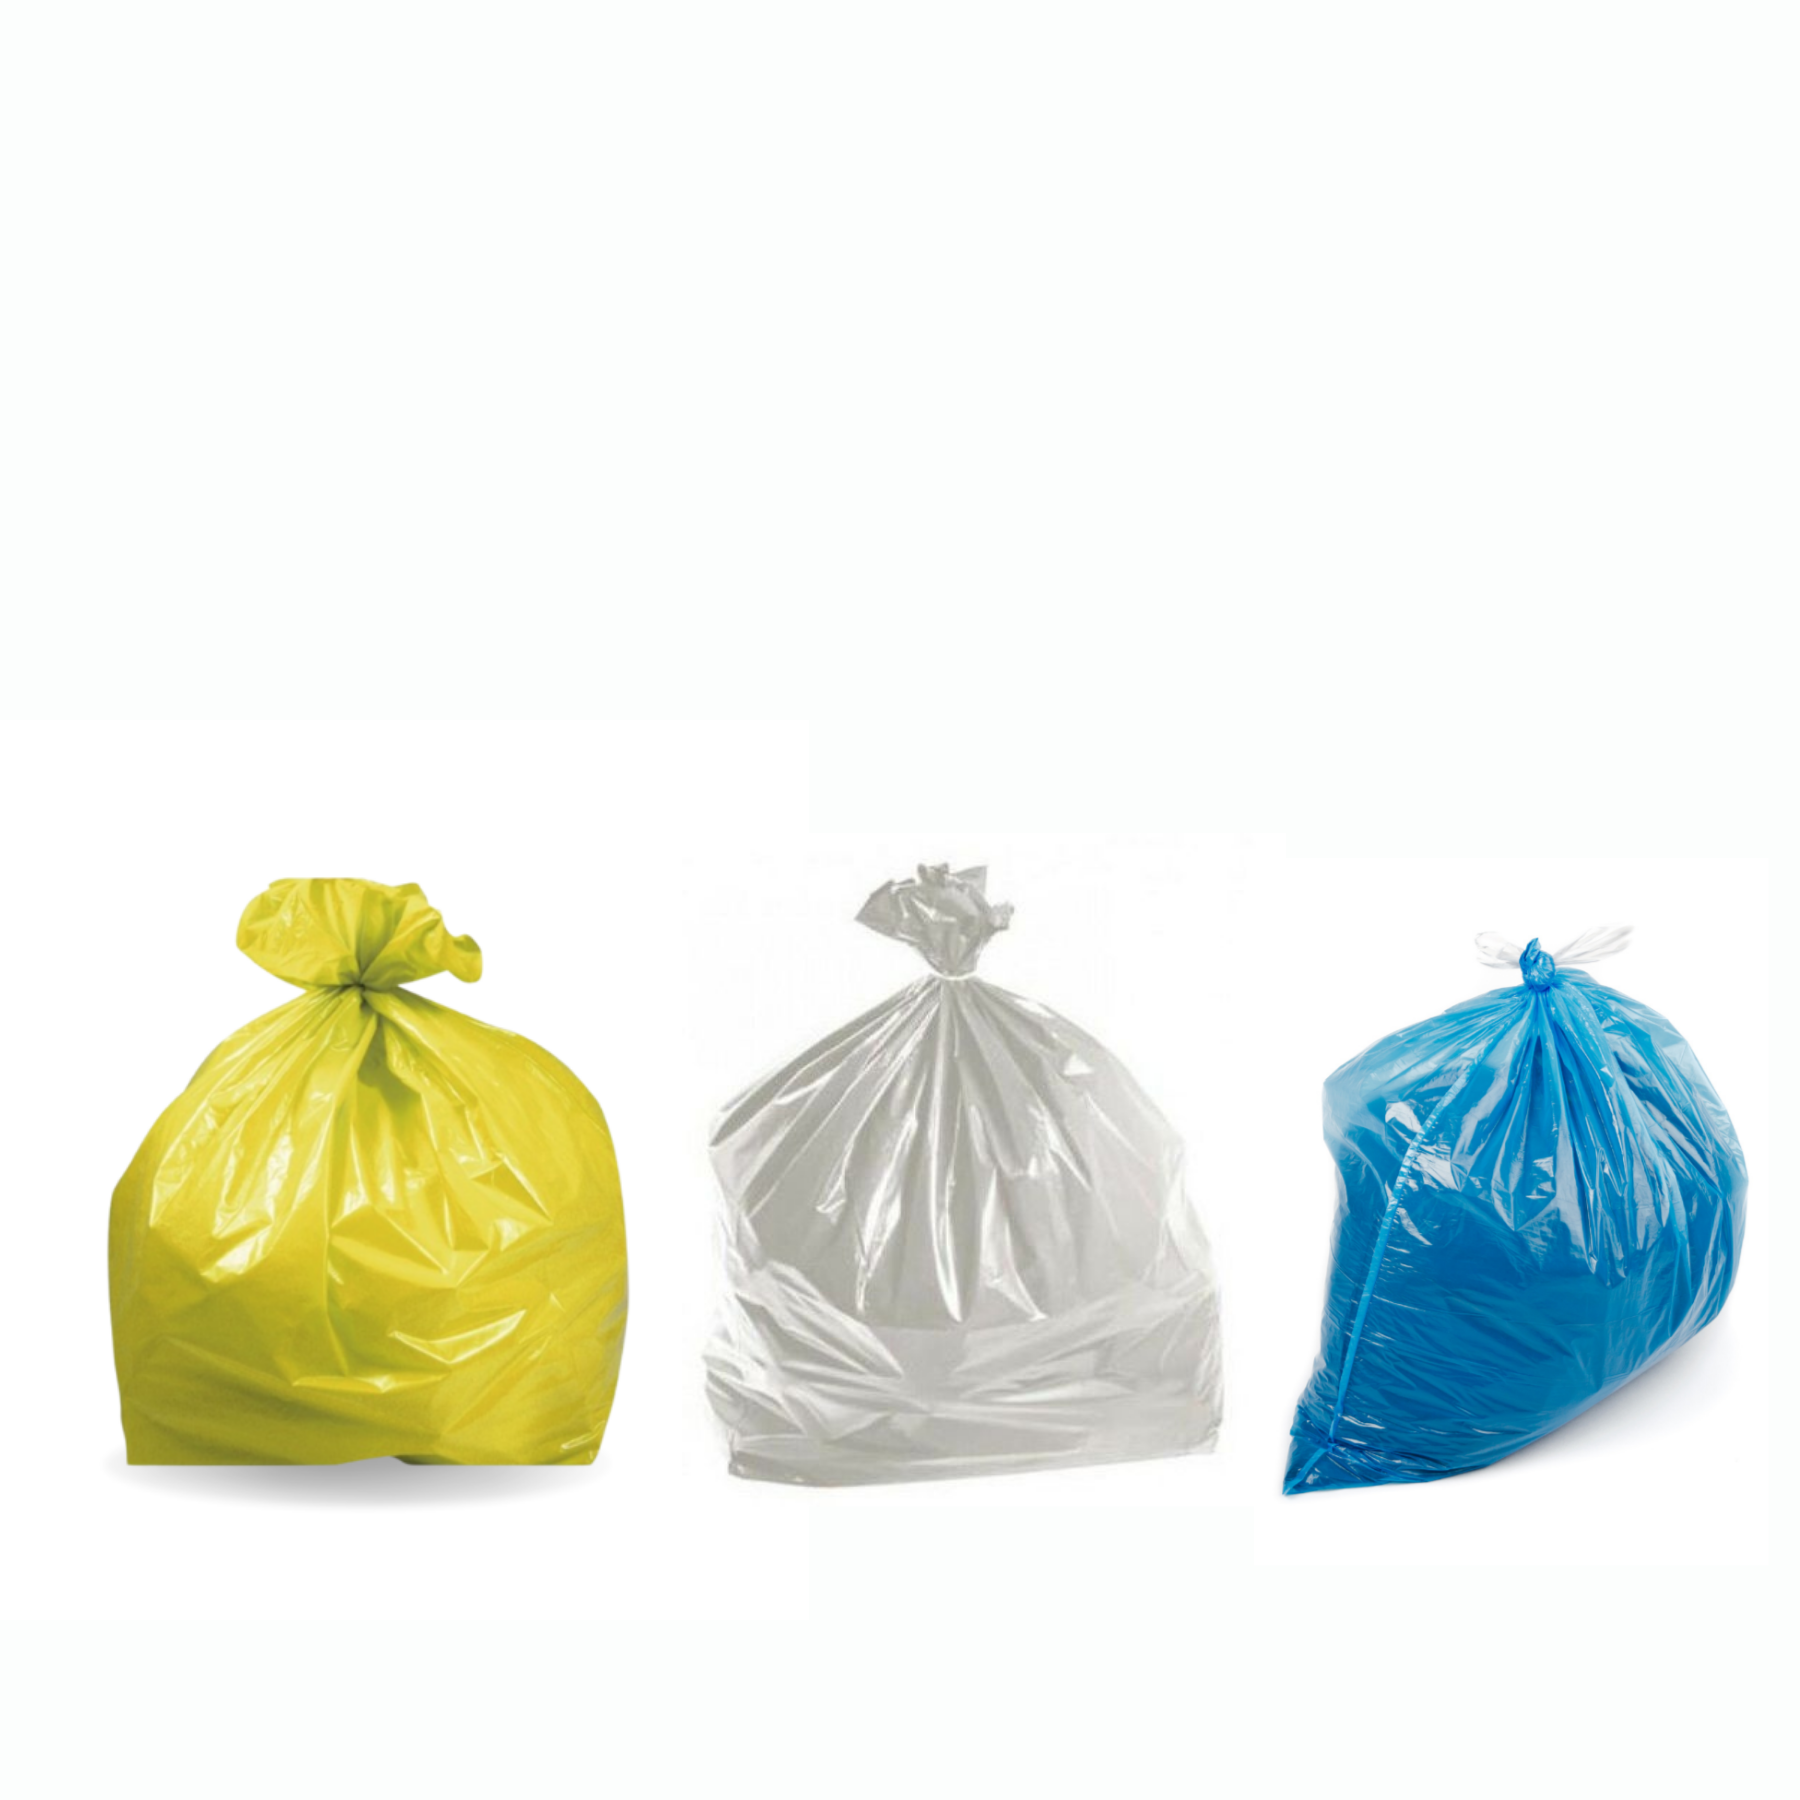 I colori dei sacchetti per la Raccolta Differenziata